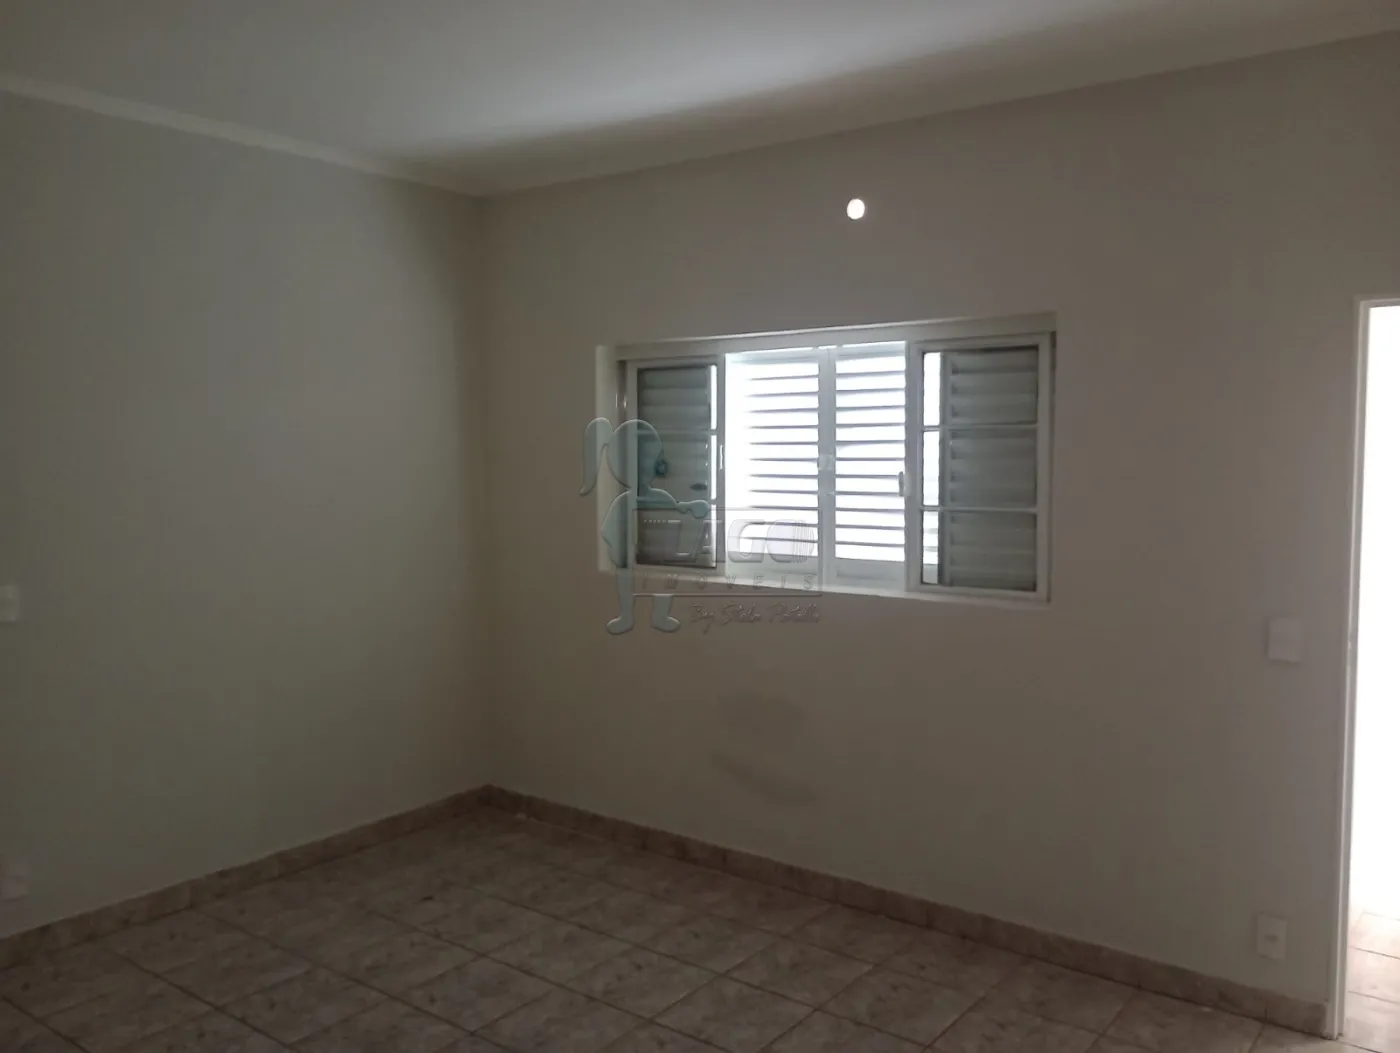 Comprar Casa / Padrão em Sertãozinho R$ 380.000,00 - Foto 3